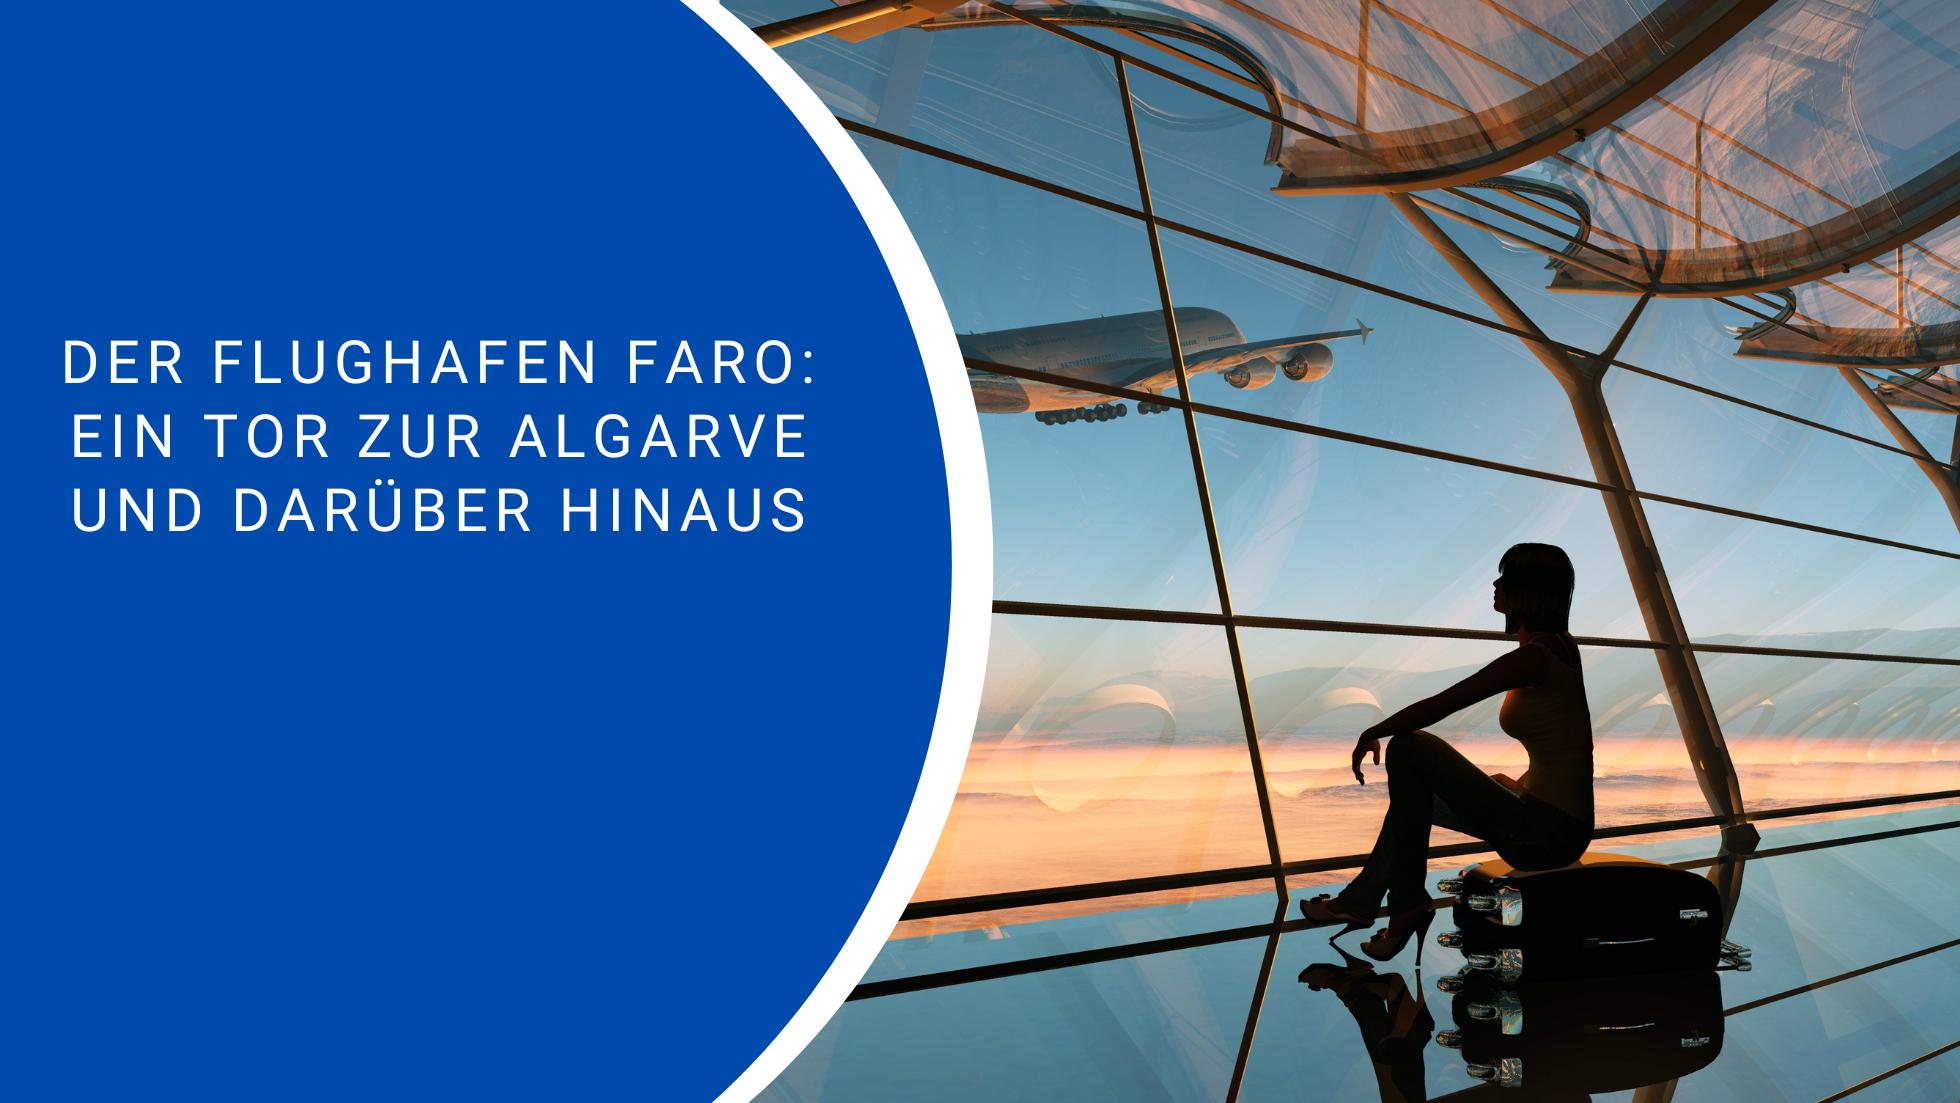 Der Flughafen Faro: Ein Tor zur Algarve und darüber hinaus